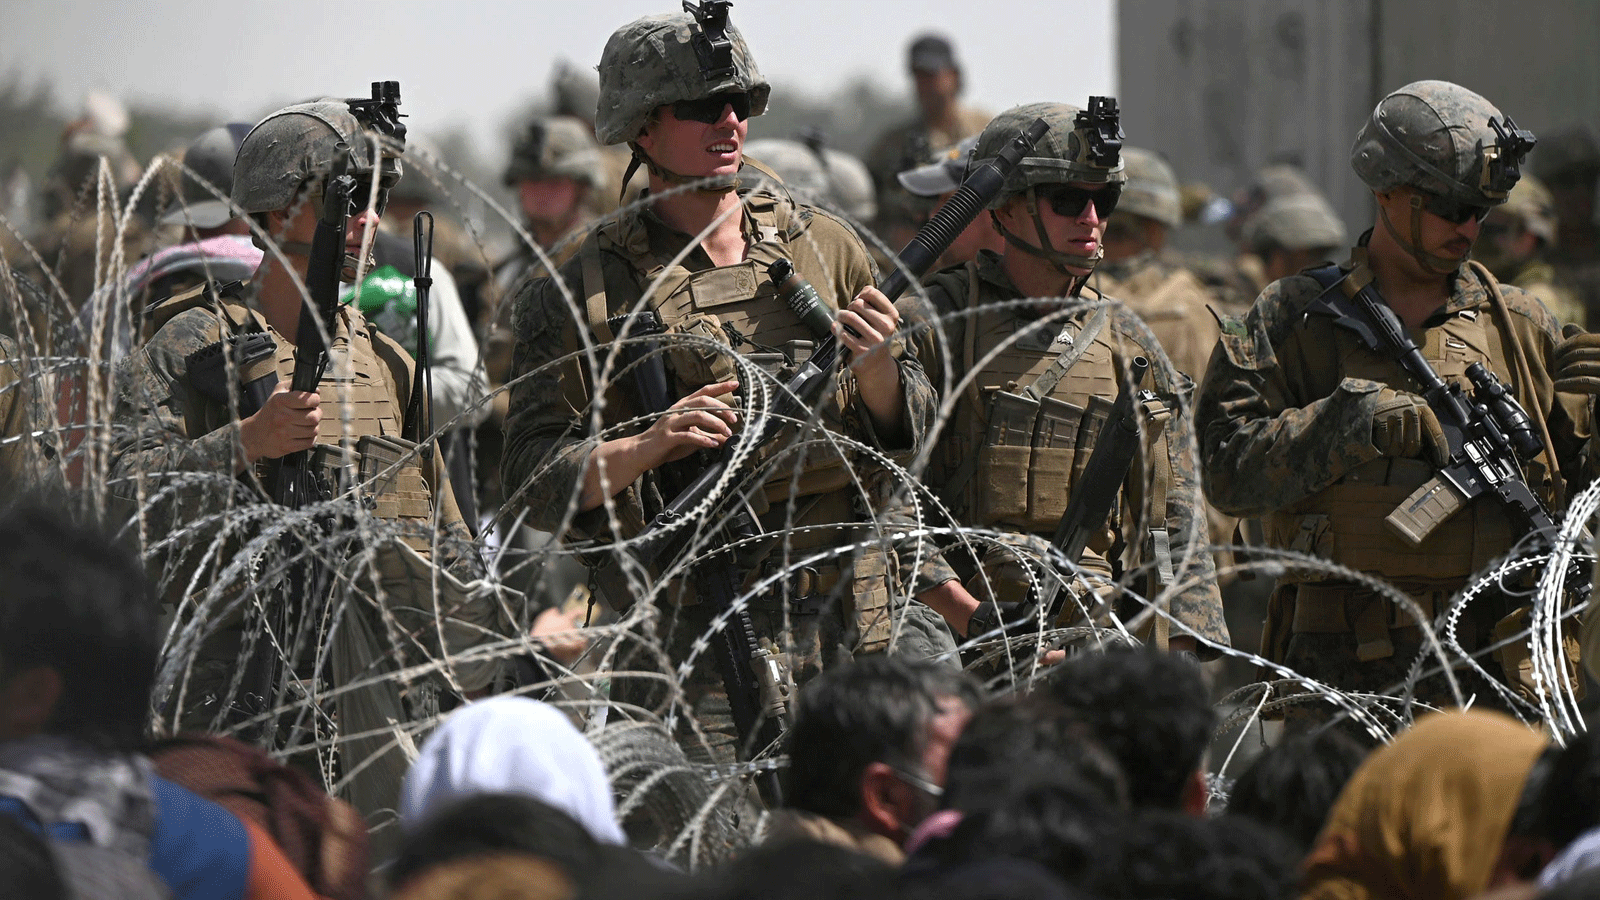 جنود أمريكيون يقفون خلف الأسلاك الشائكة بينما يجلس الأفغان على جانب طريق بالقرب من الجزء العسكري من مطار كابول في 20 آب/ أغسطس 2021، على أمل الفرار من البلاد بعد سيطرة طالبان العسكرية على أفغانستان